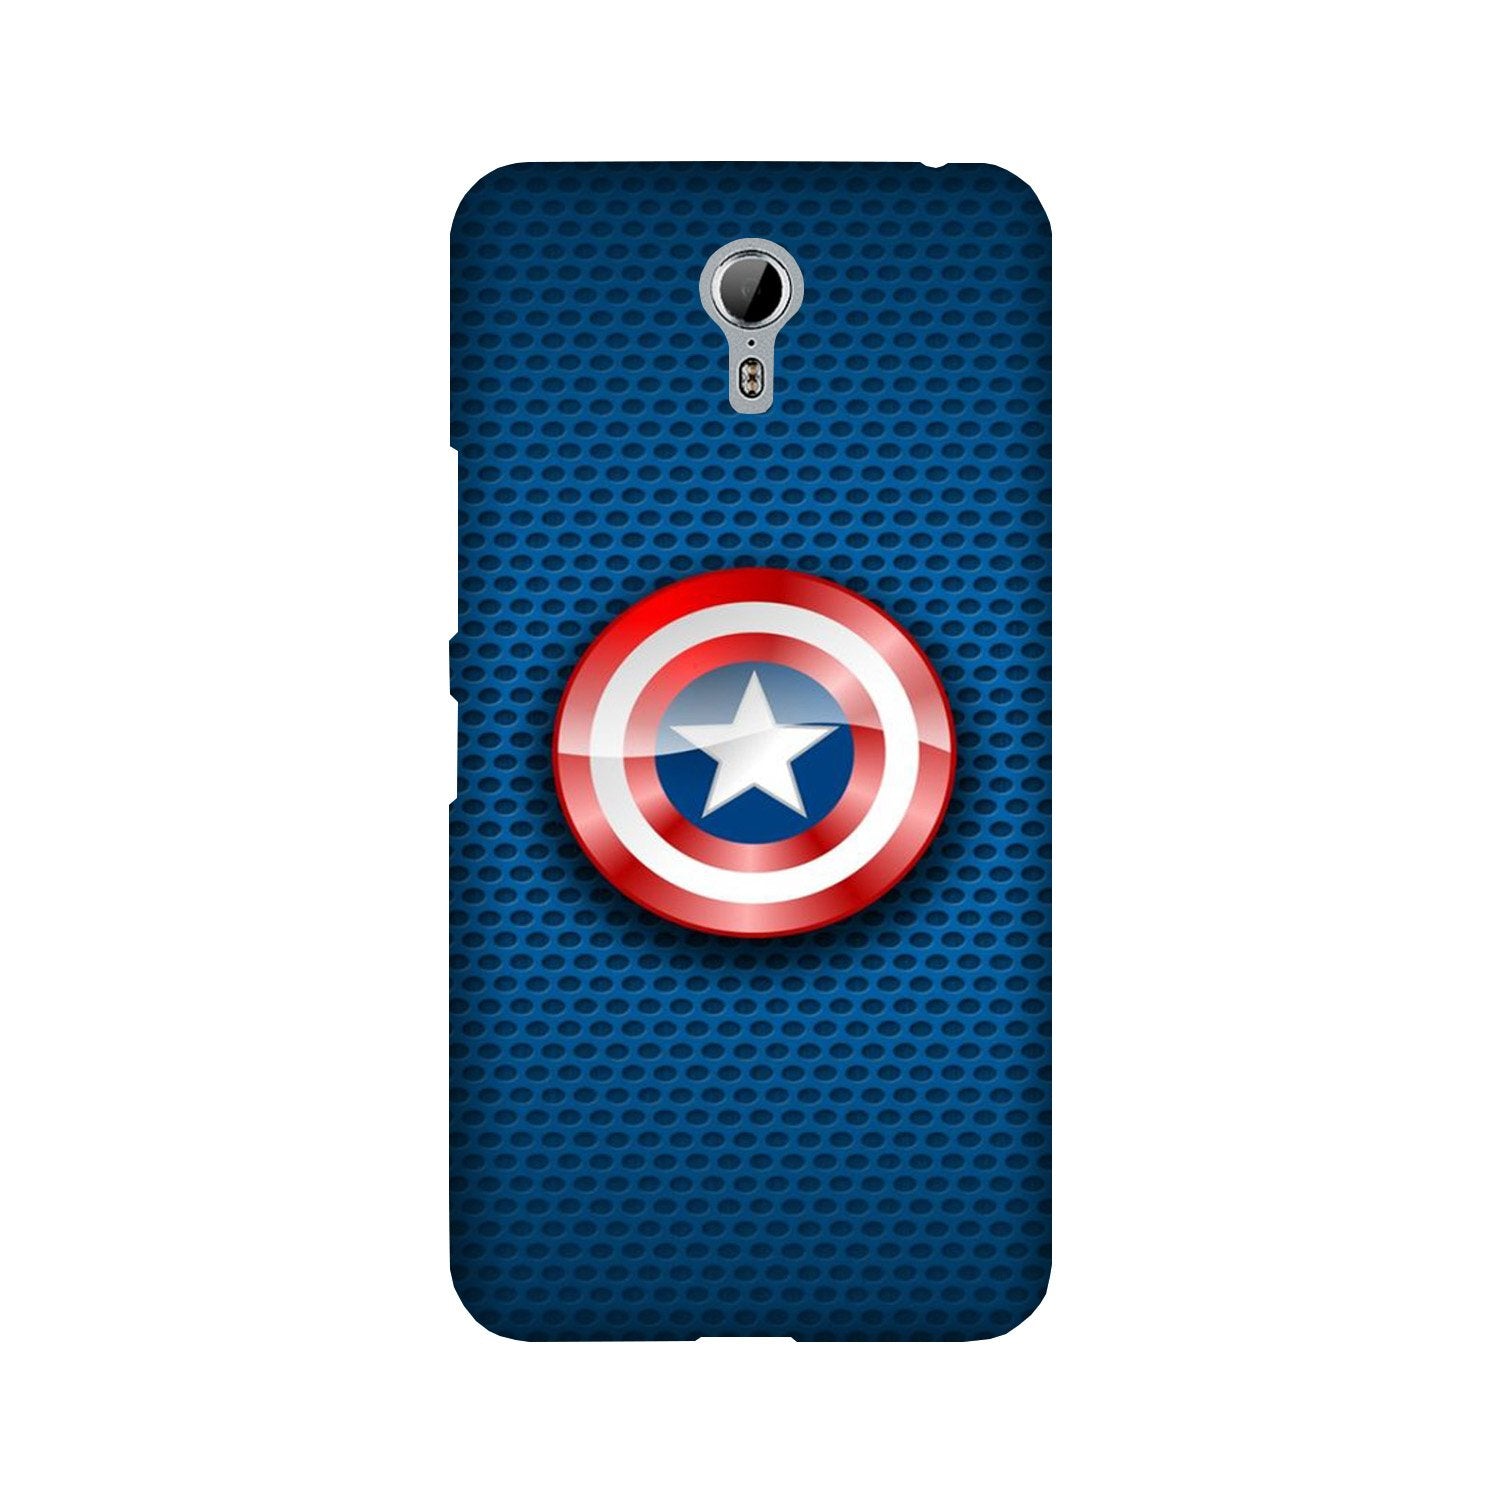 Captain America Shield Case for Lenovo Zuk Z1 (Design No. 253)